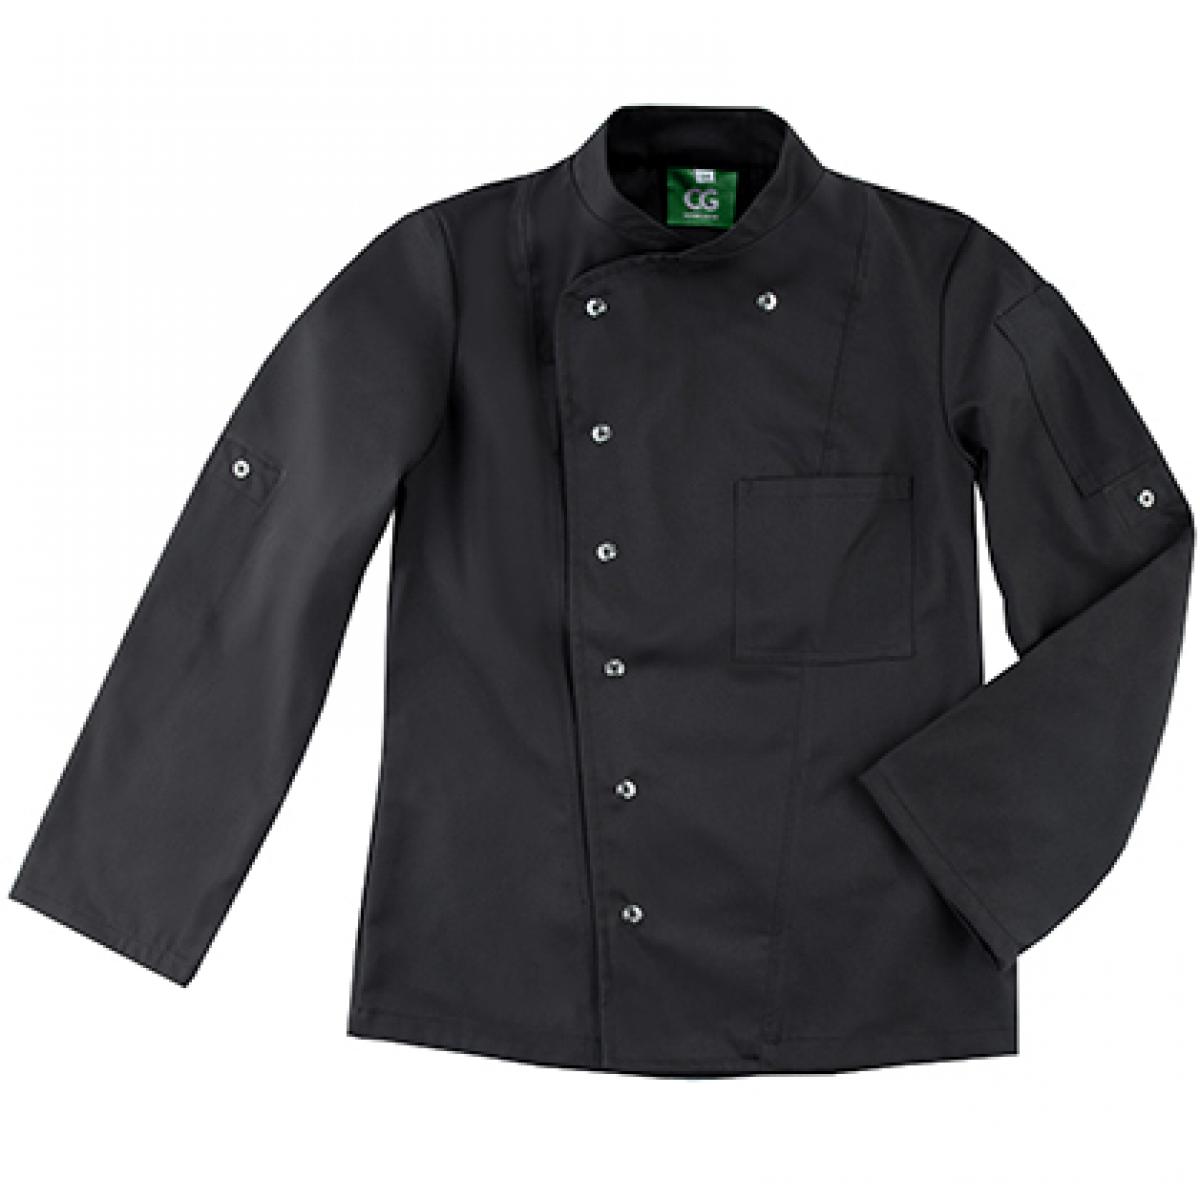 Hersteller: CG Workwear Herstellernummer: 03105-44 Artikelbezeichnung: Ladies´ Chef Jacket Turin GreeNature bis 95 °C waschbar Farbe: Black